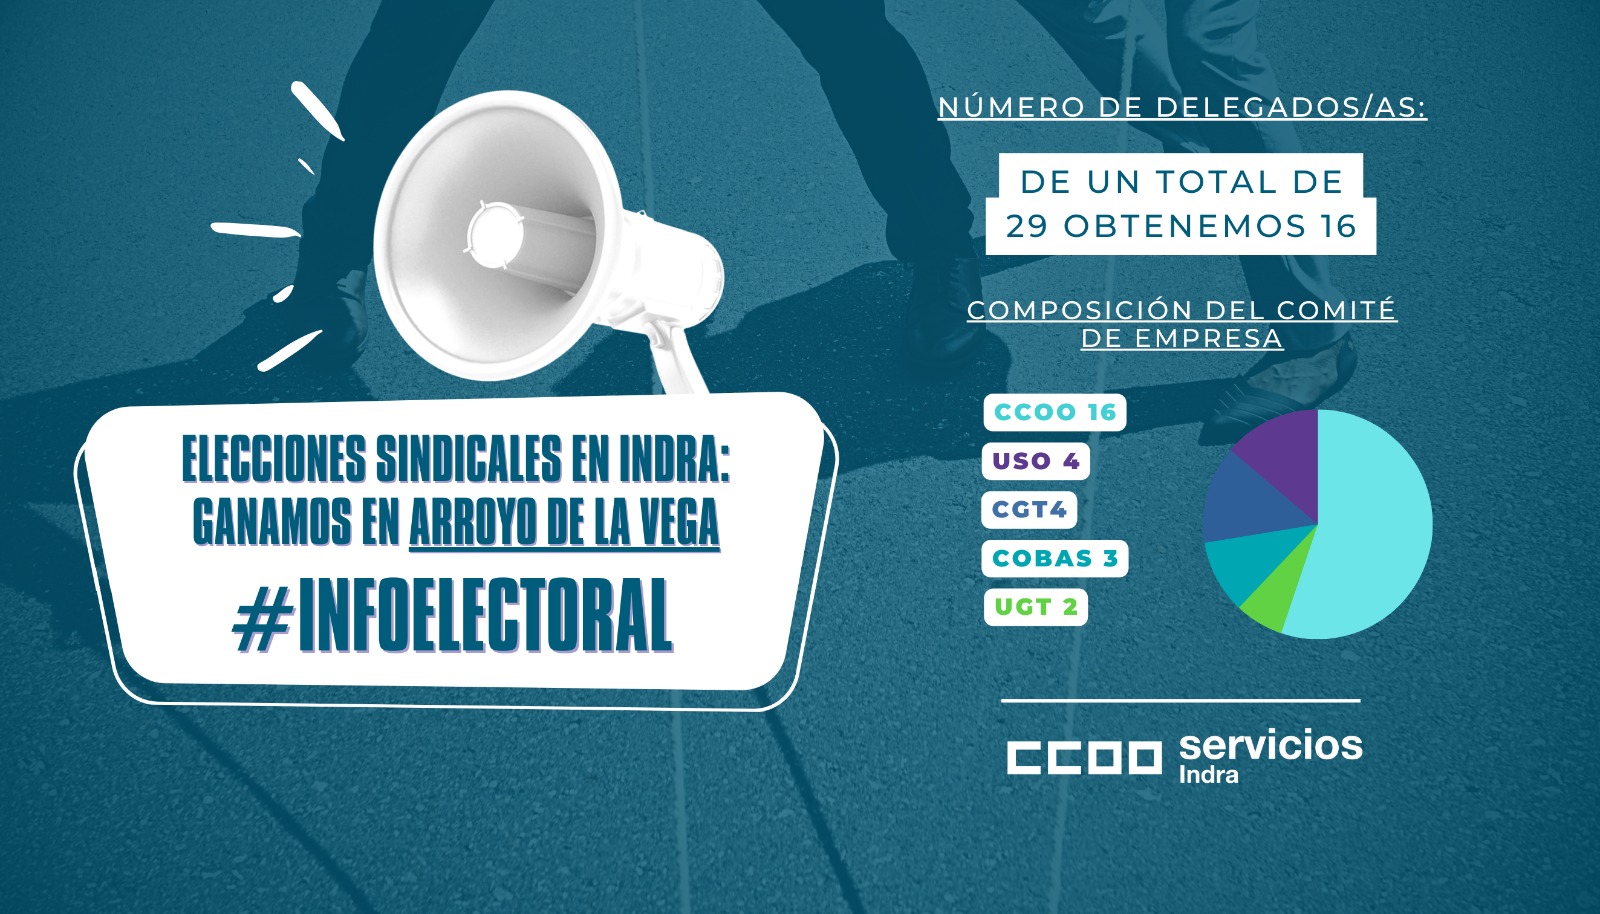 imagen con los resultados de las elecciones sindicales de INDRA de Arrollo de la Vega en Madrid